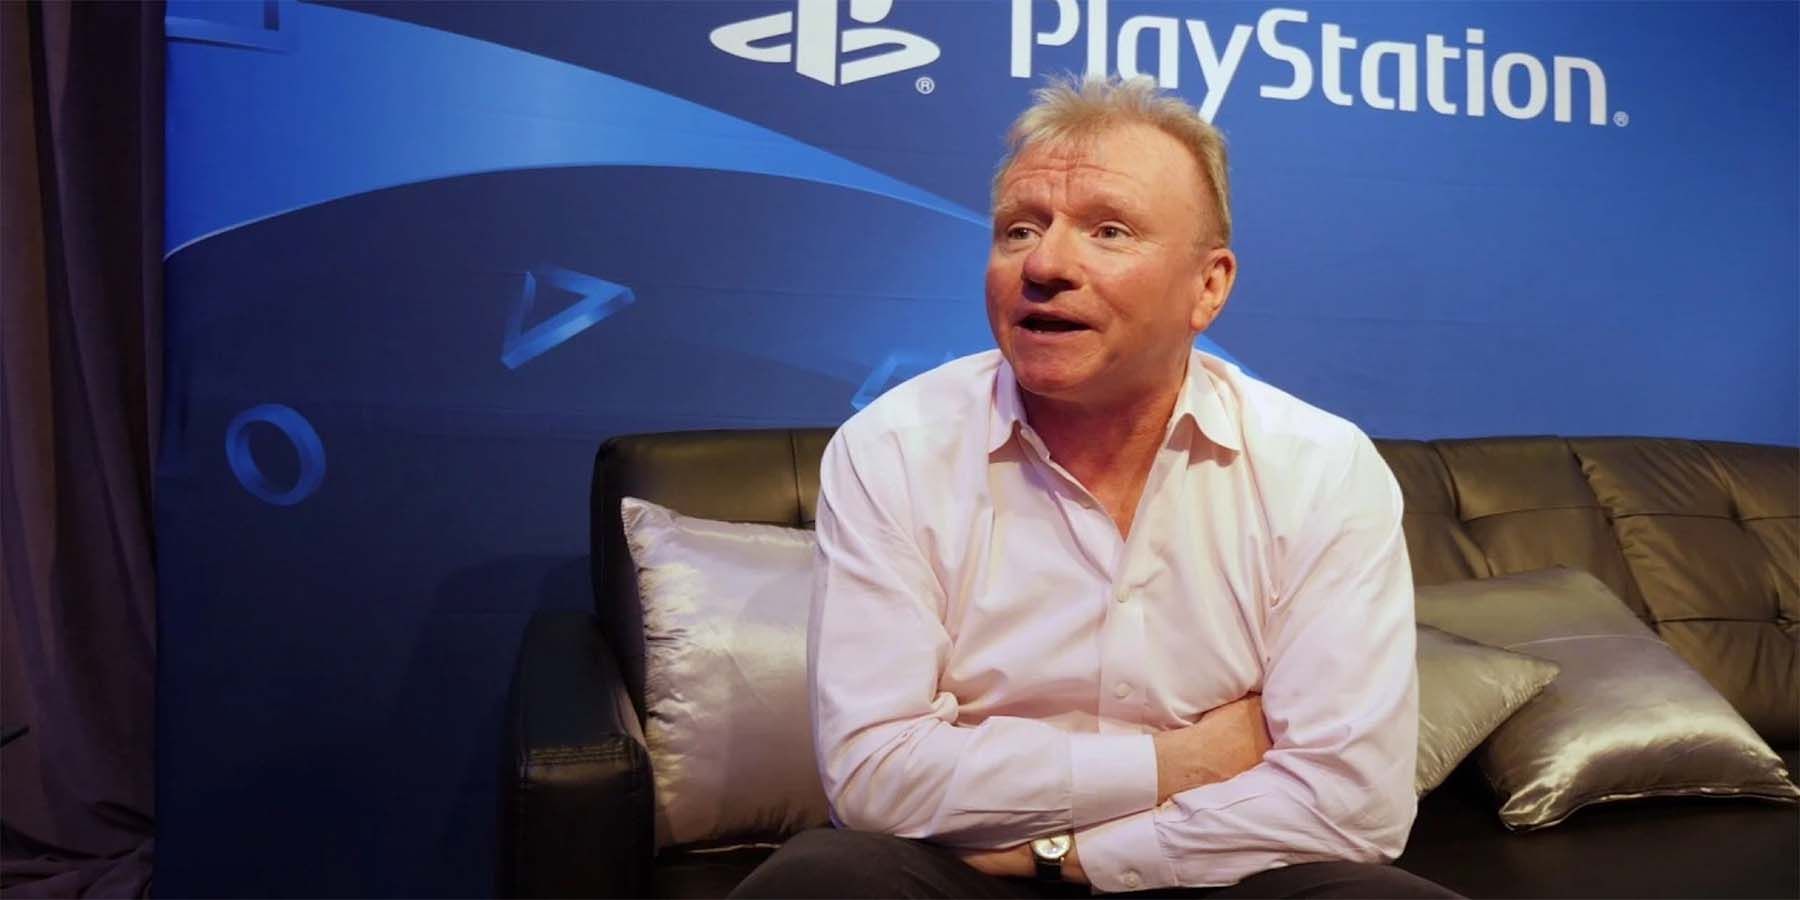 PlayStationin Jim Ryan Slated keskustelemaan pelaamisen menneisyydestä ja tulevaisuudesta Fireside Chatissa